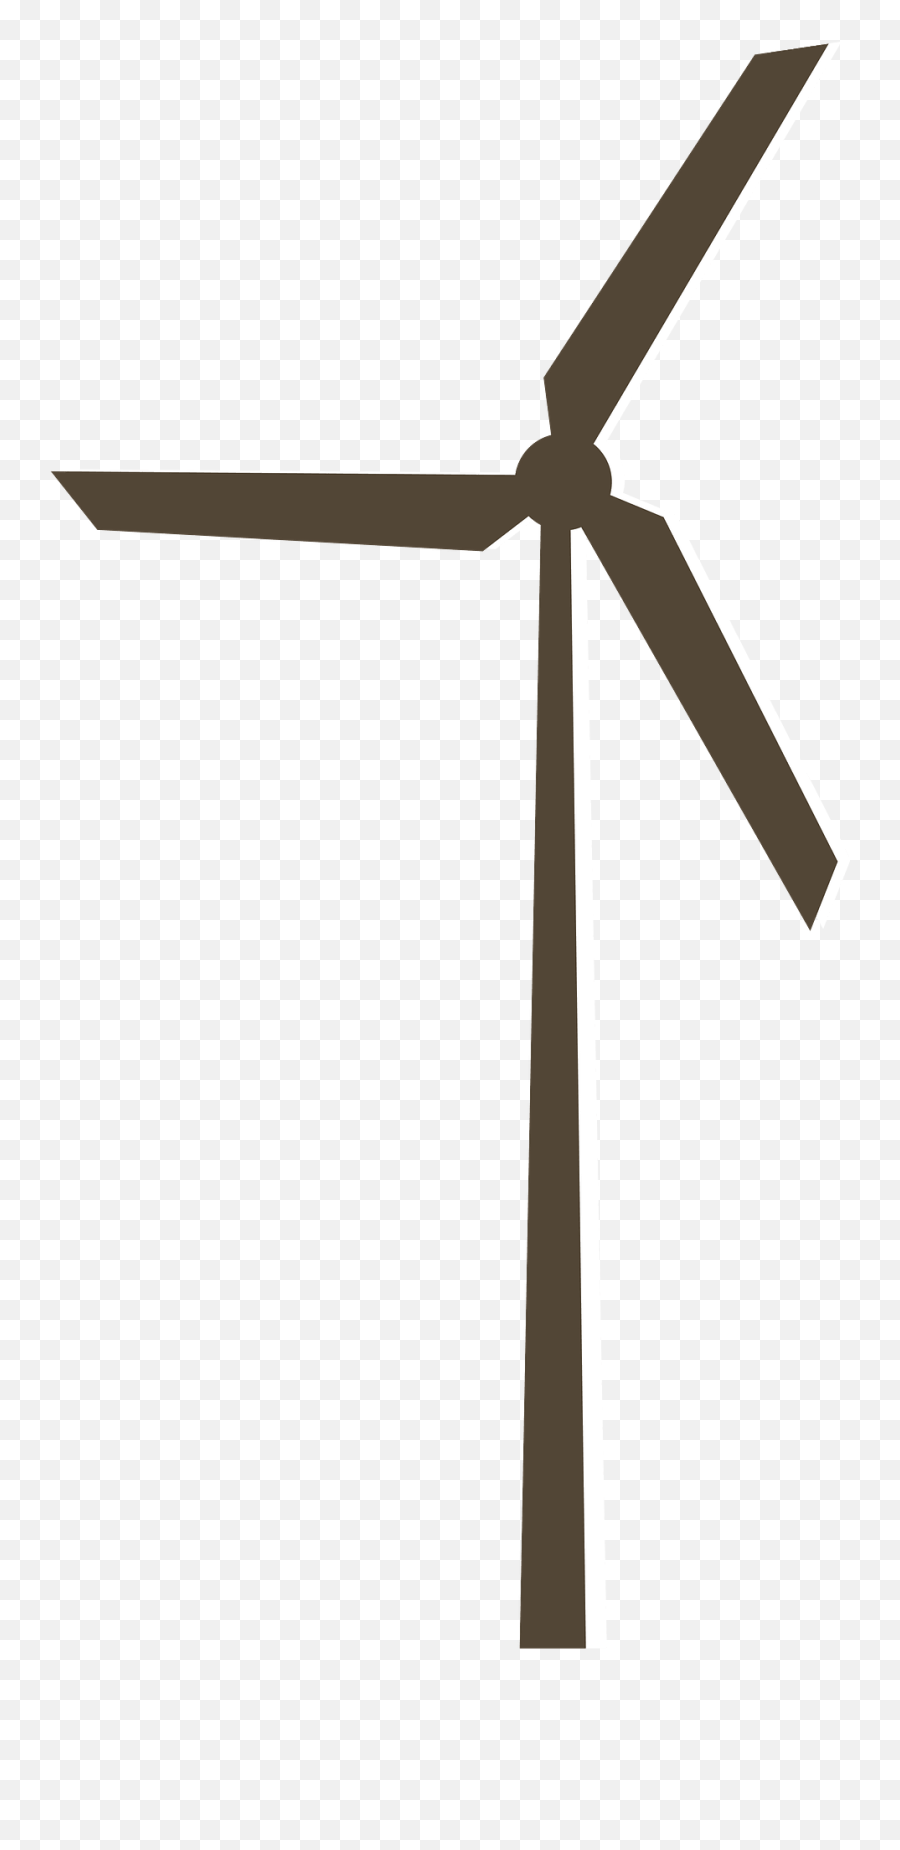 Wind Turbine Clipart Emoji,Wind Turbine Clipart